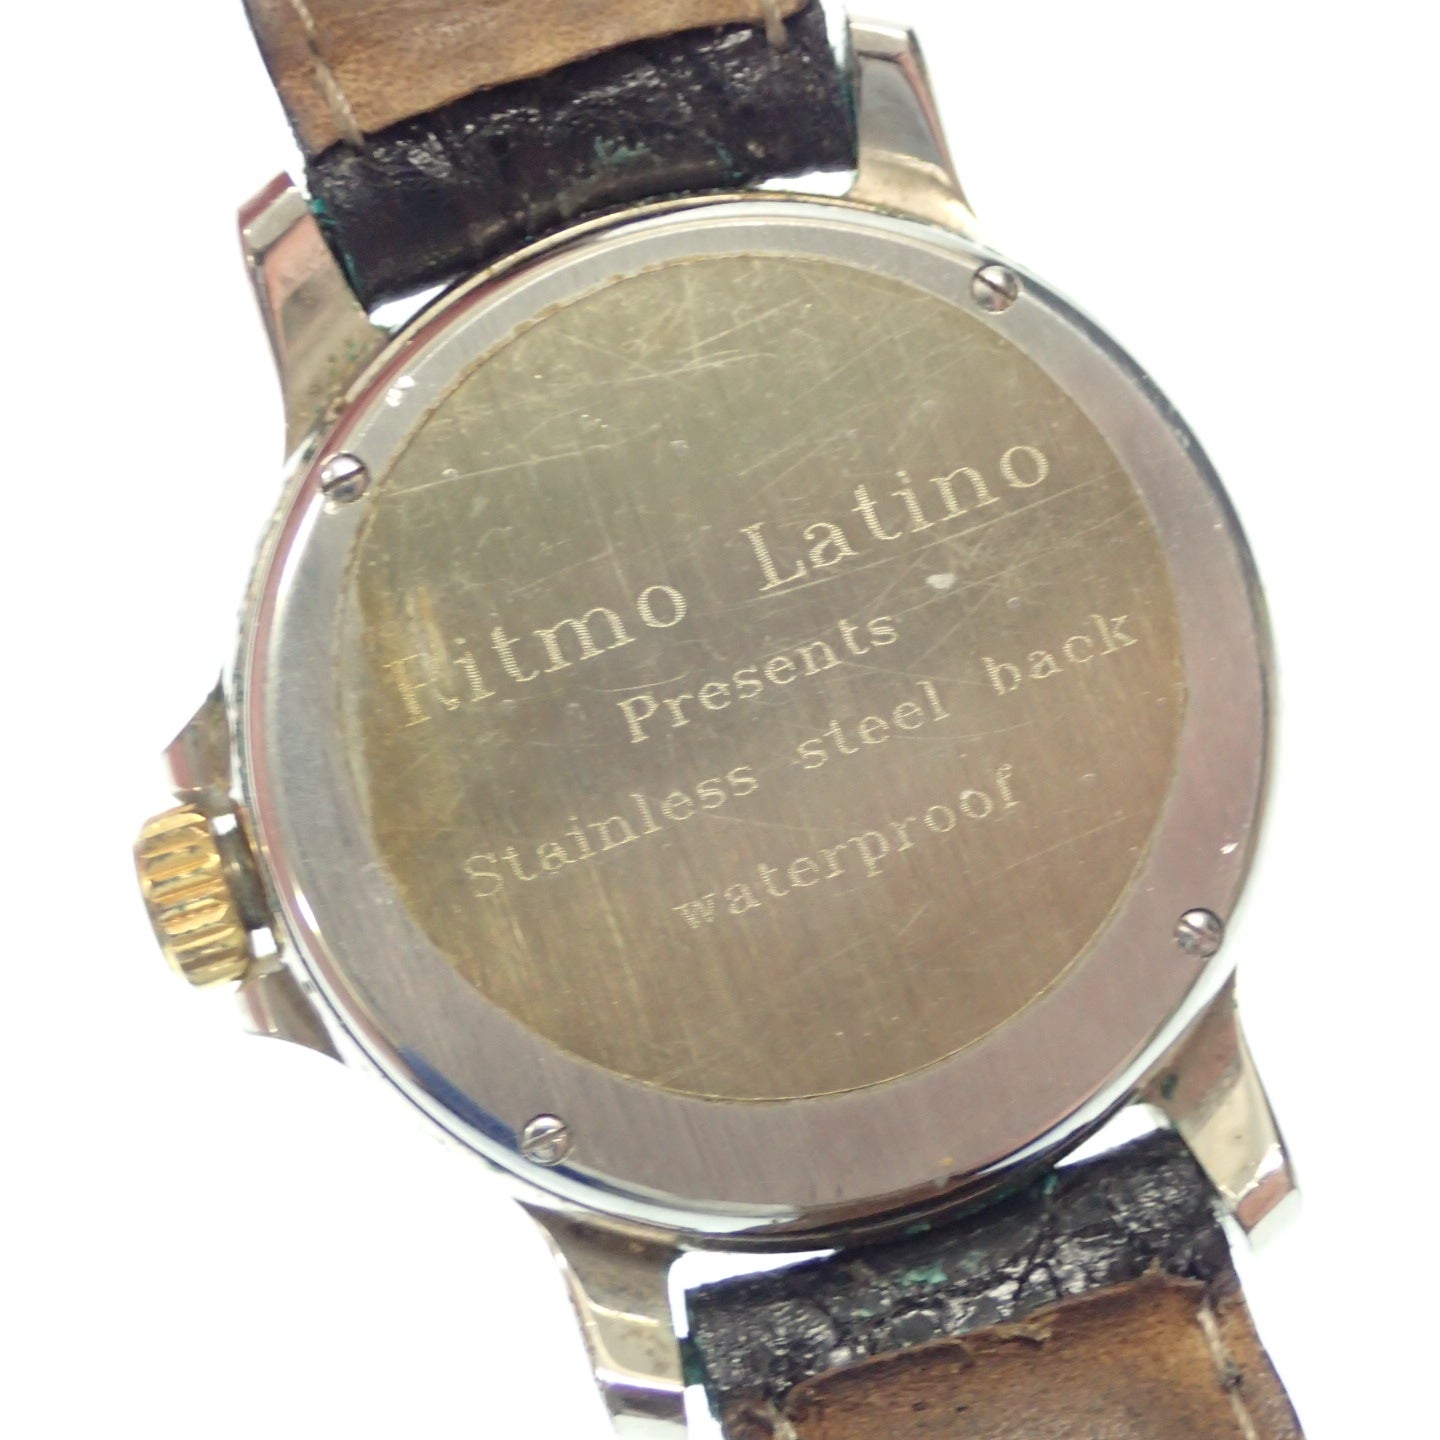 二手 Ritmo Latino 手表 Luna 月相 三重日历 石英 黑色表盘 皮革皮带 Ritmo Latino [AFI12] 